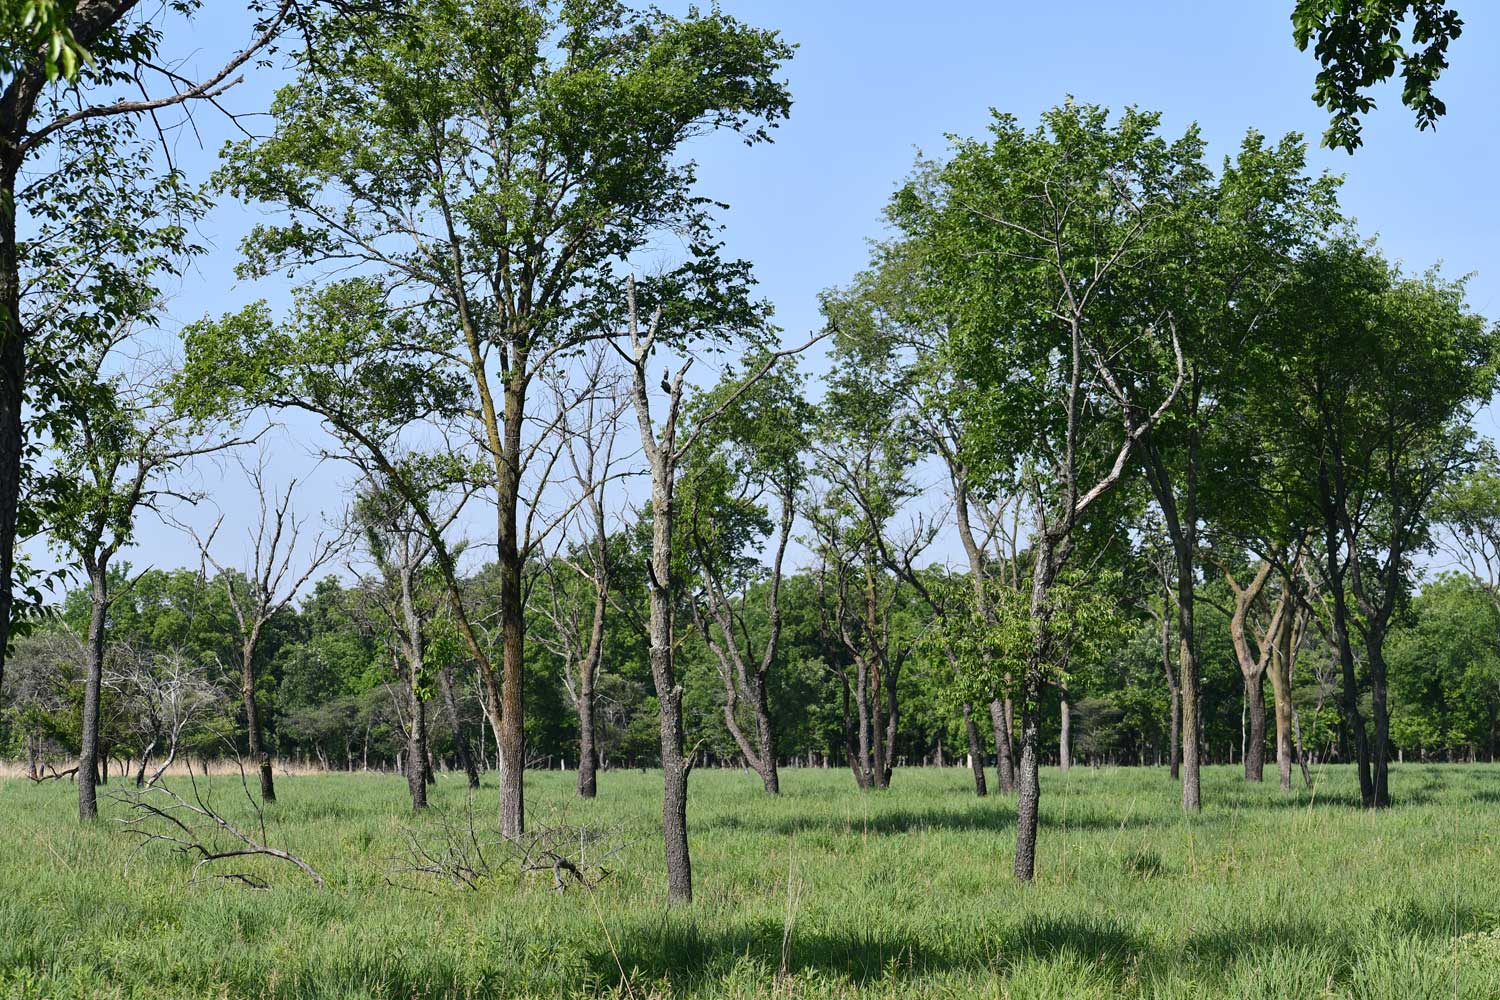 Trees in a field.